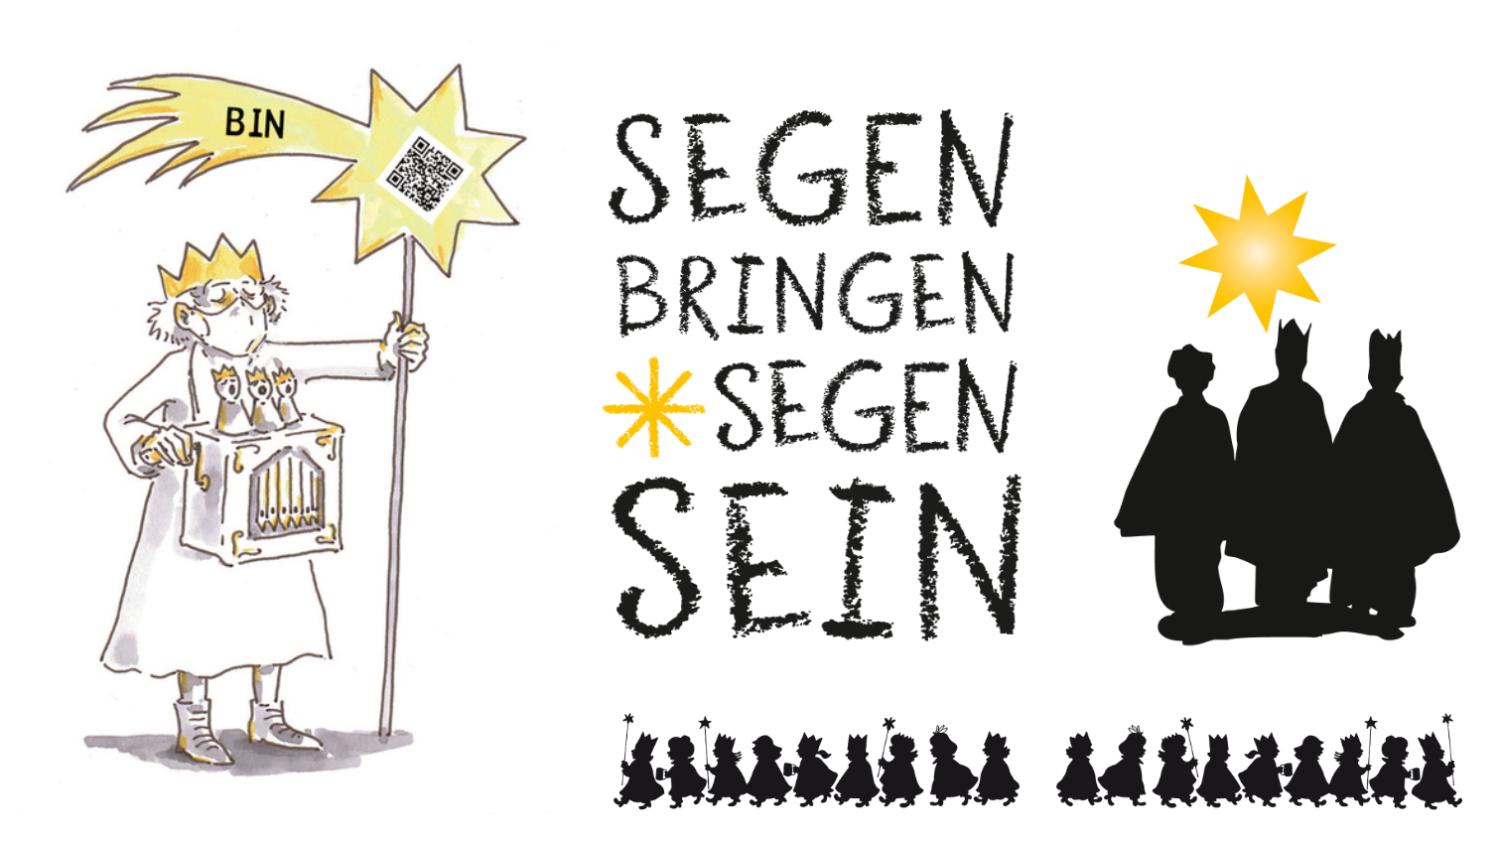 Sternsinger-Video - Bingen-Kempten